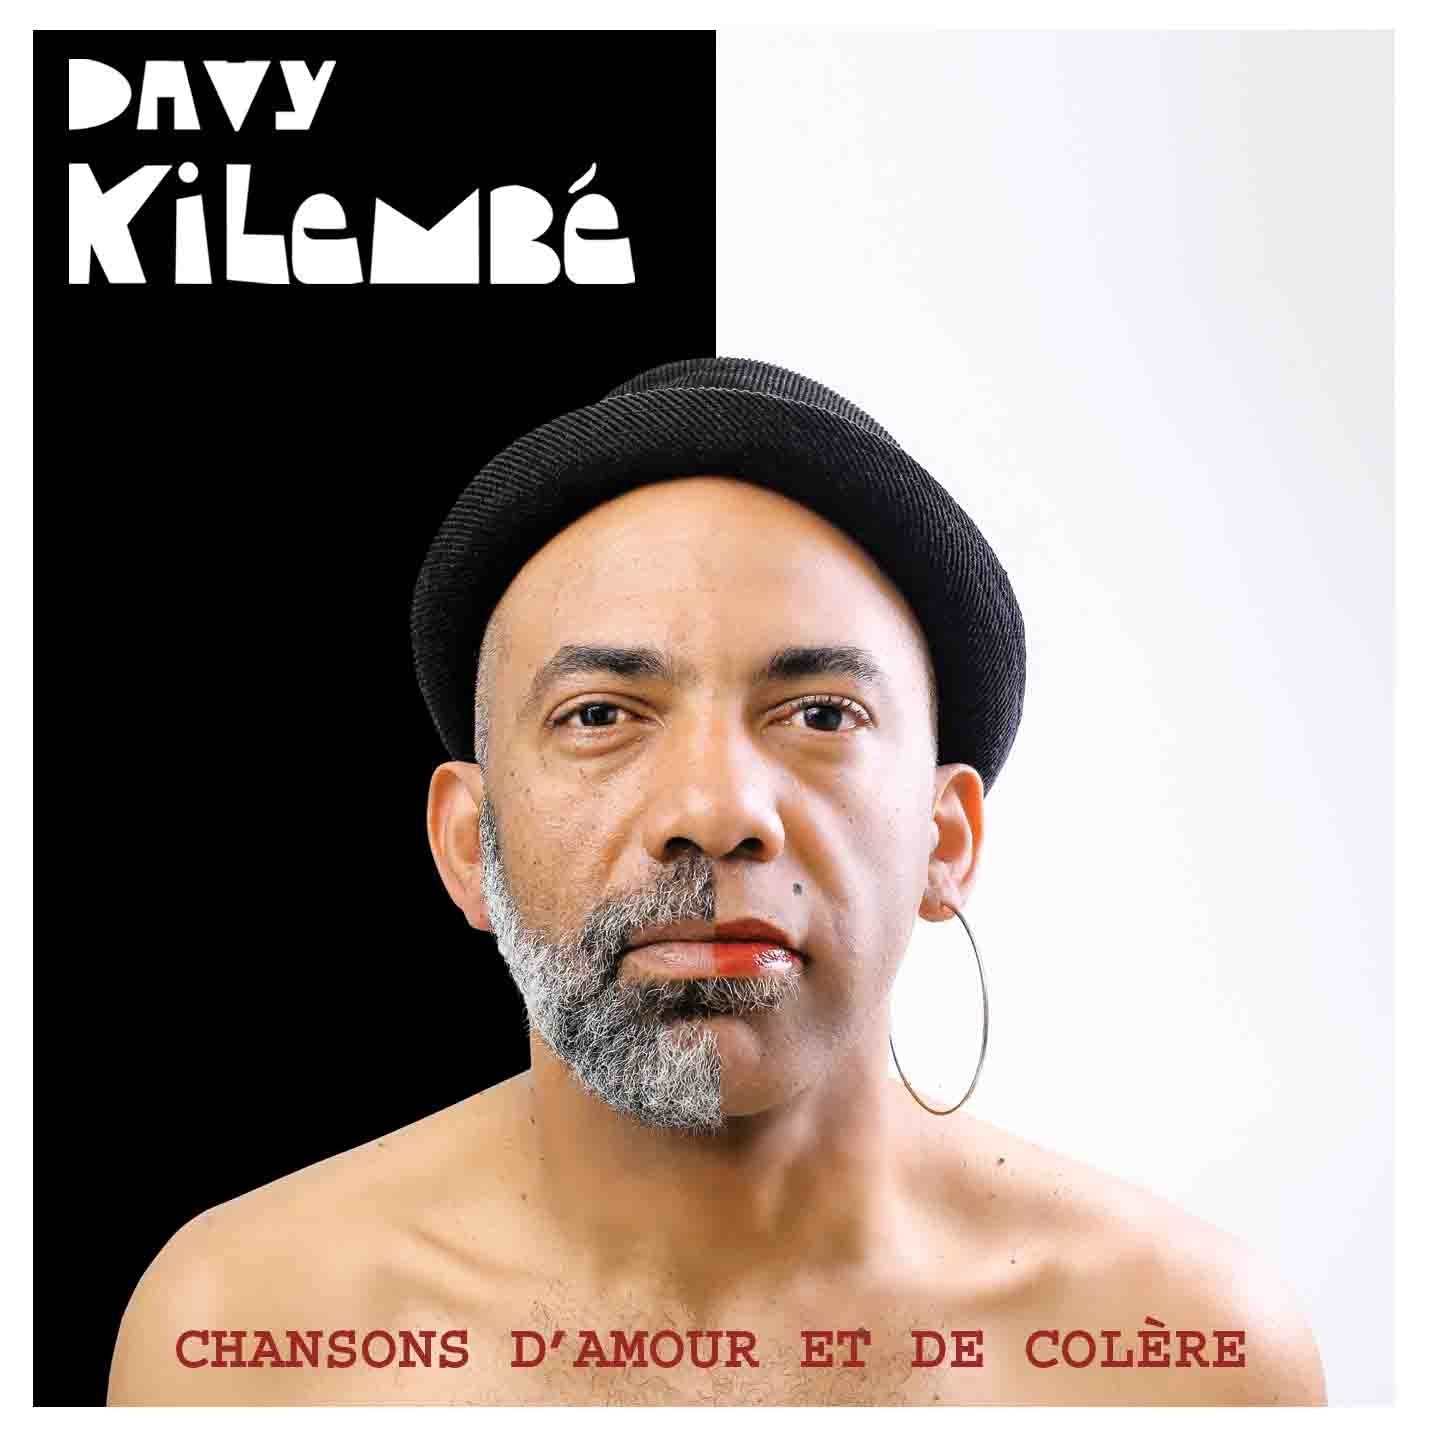 Pochette de : CHANSONS D'AMOUR ET DE COLÈRE - DAVY KILEMBE (CD)